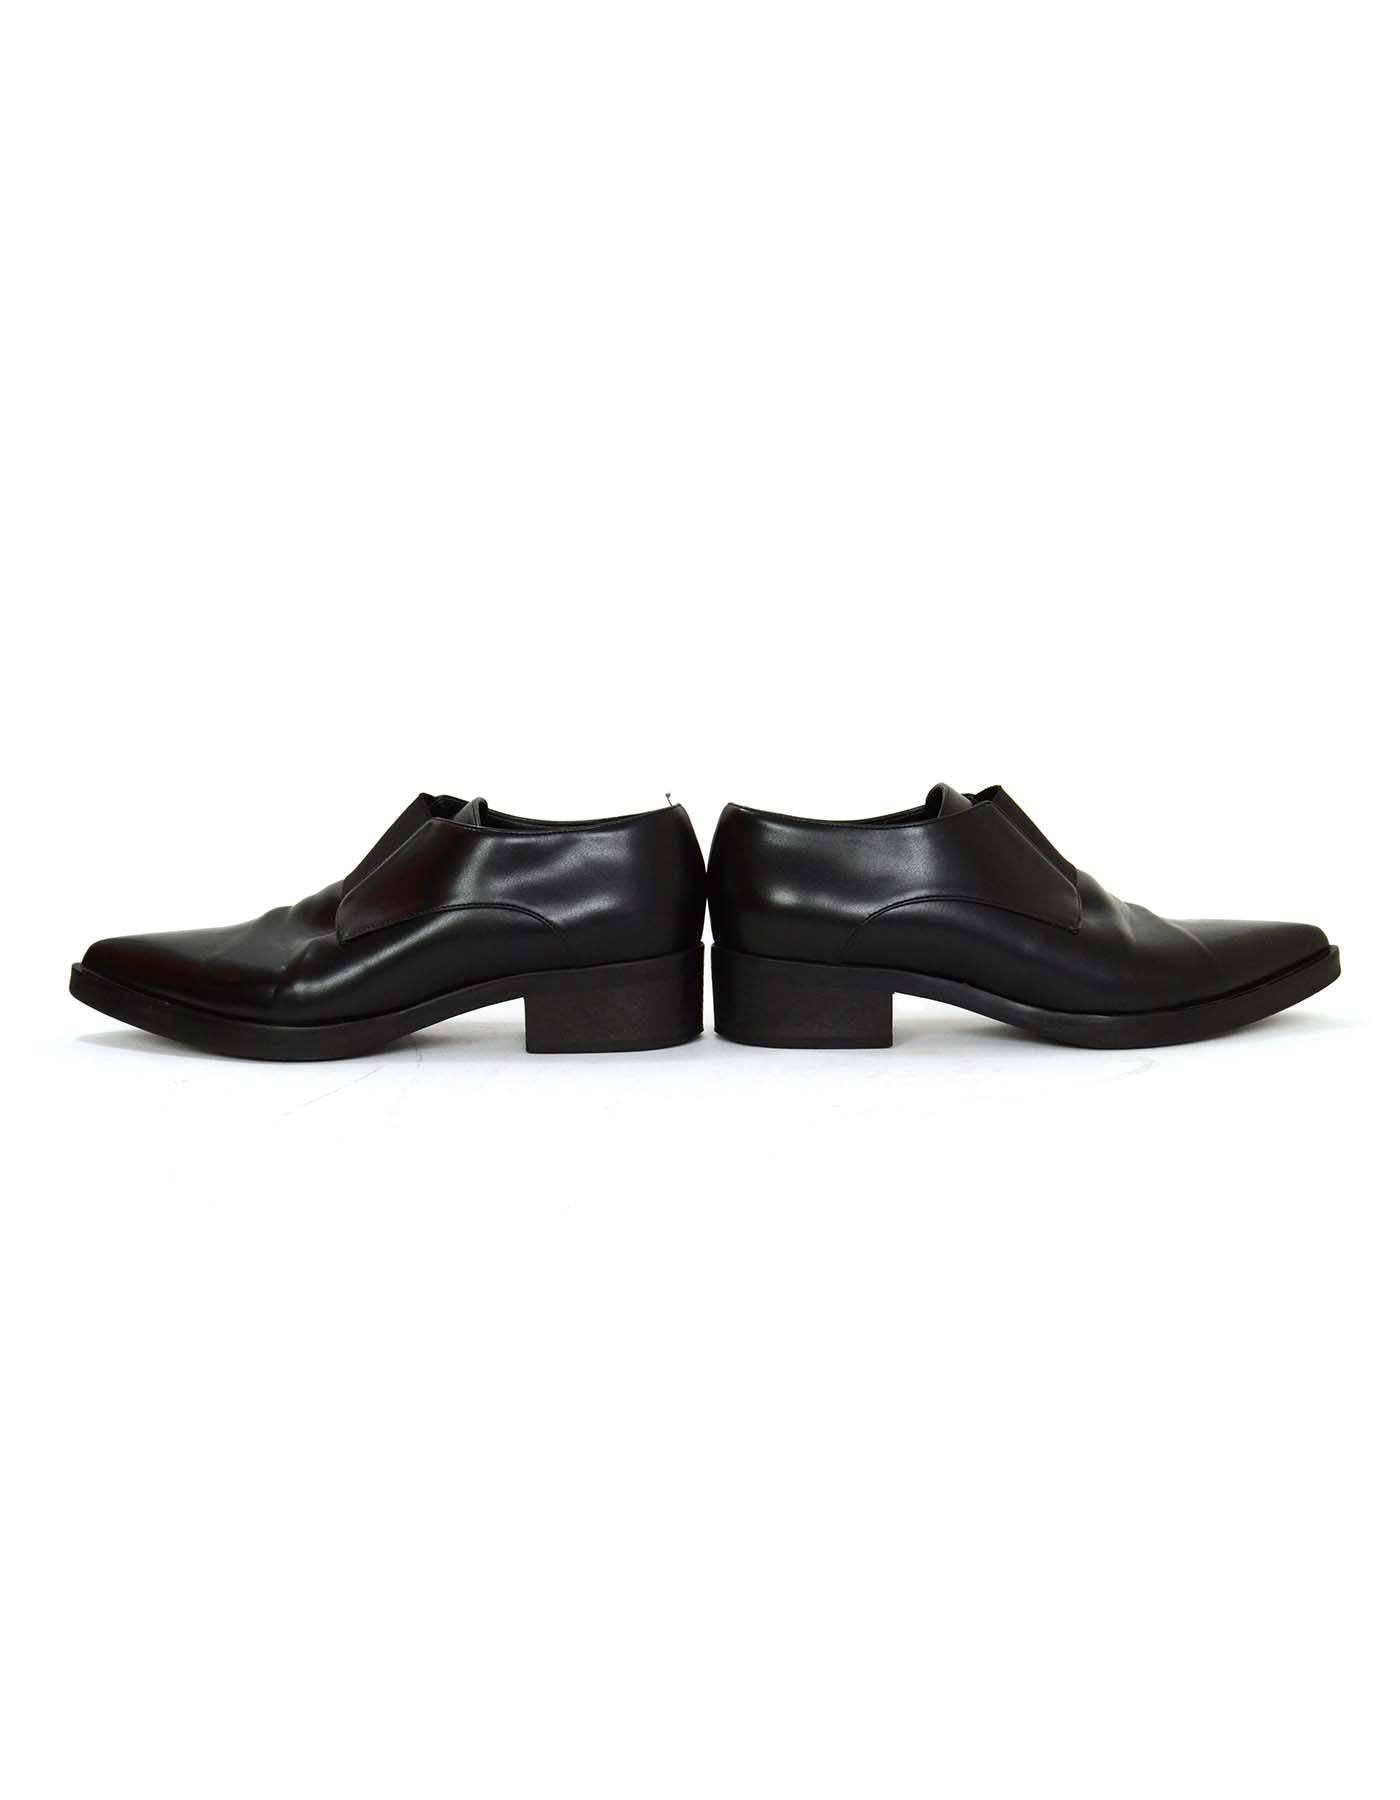 Stella McCartney Black Pointed Toe Tuxedo Shoes sz 37 2